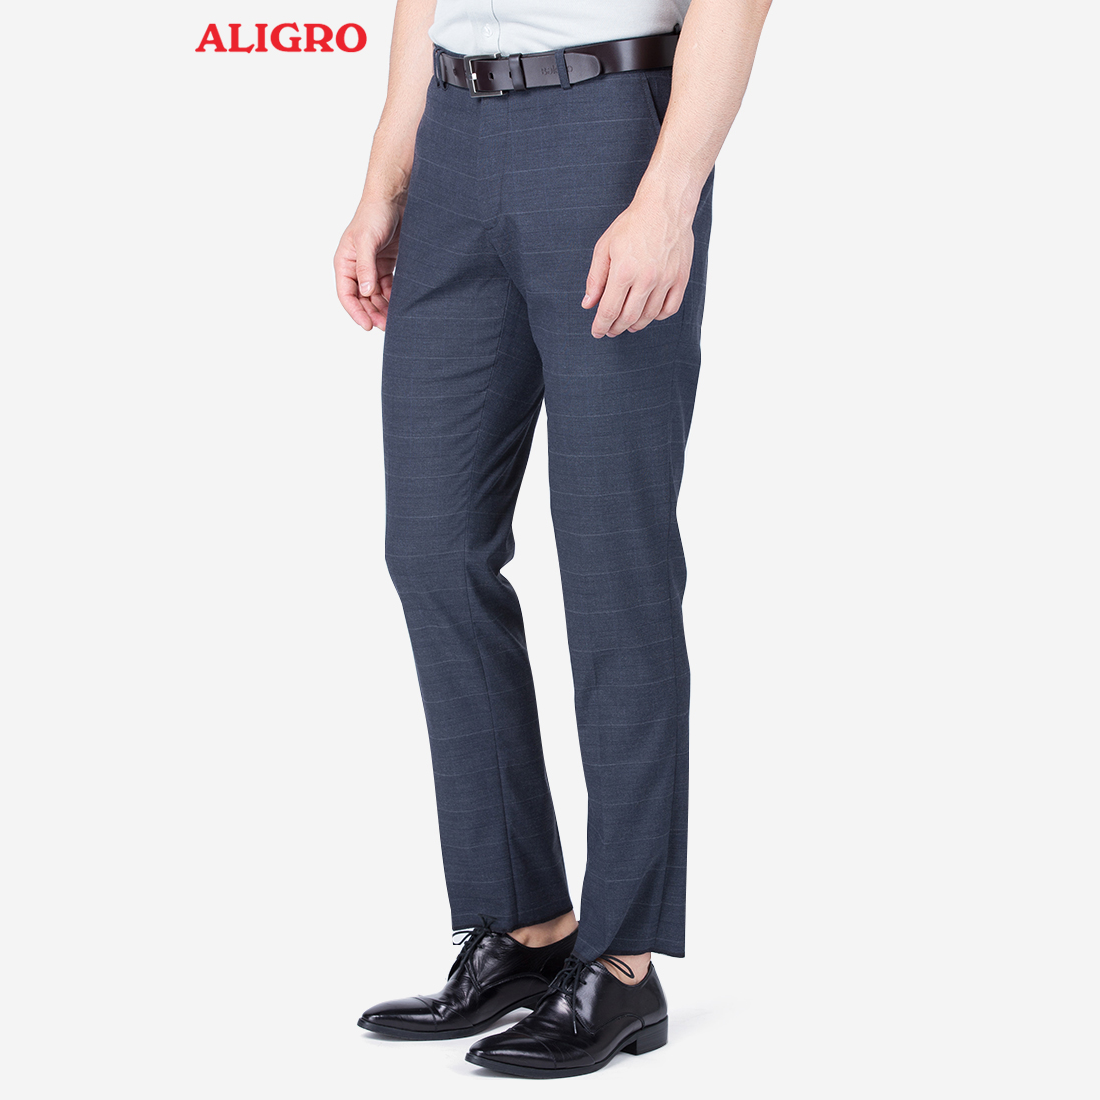 Quần âu nam ALIGRO form chuẩn slimfit chất vải cao cấp thoáng mát, thanh lịch, sáng trọng ALGO1015